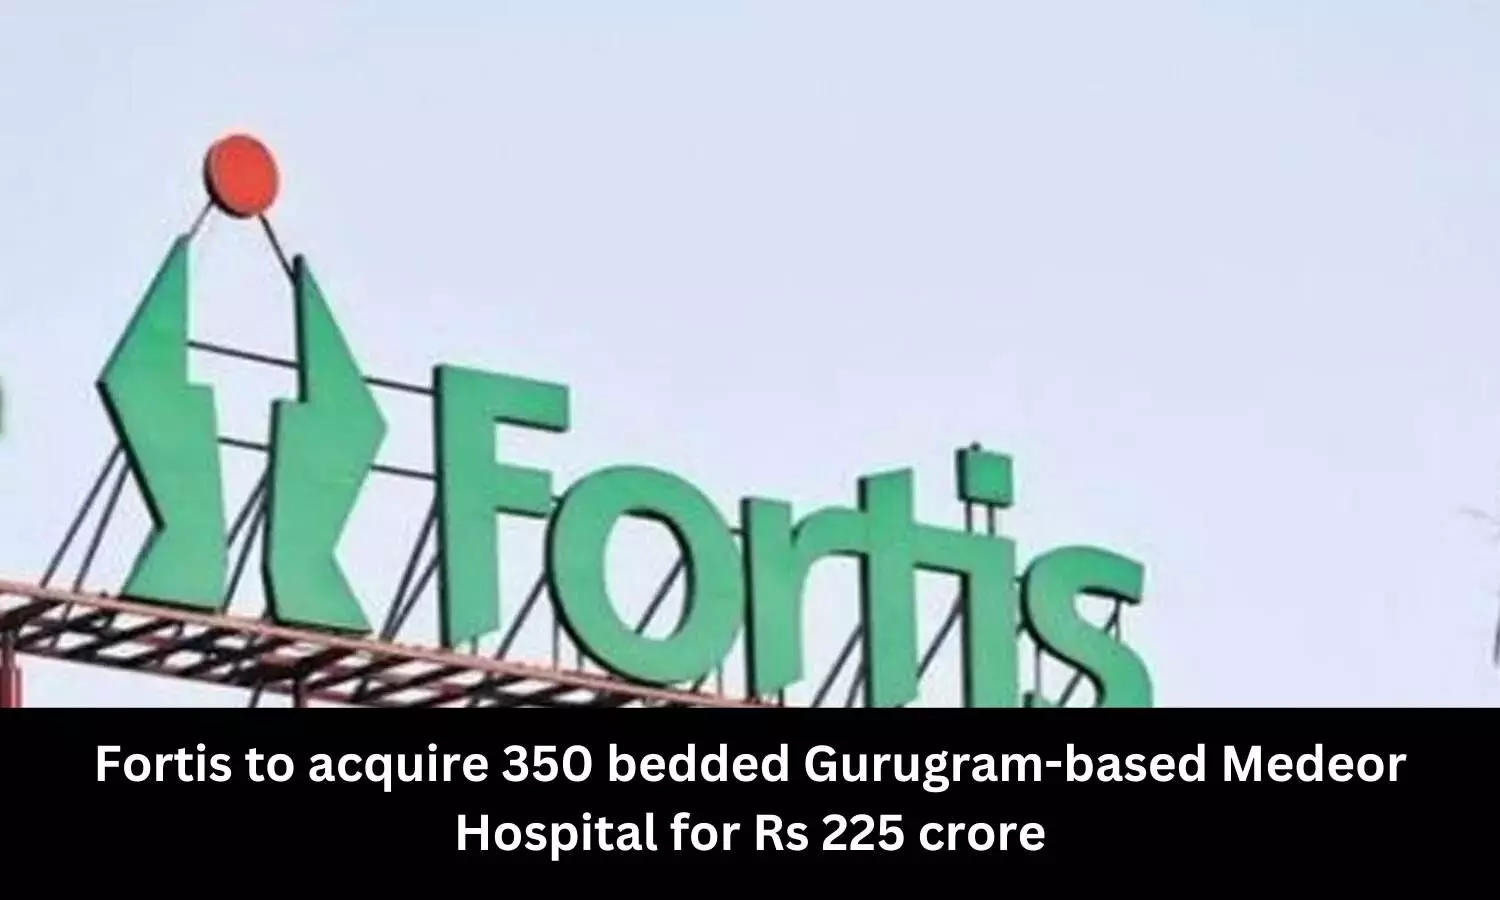 Fortis Healthcare to buy Gurugram based Medeor Hospital for Rs 225 crore